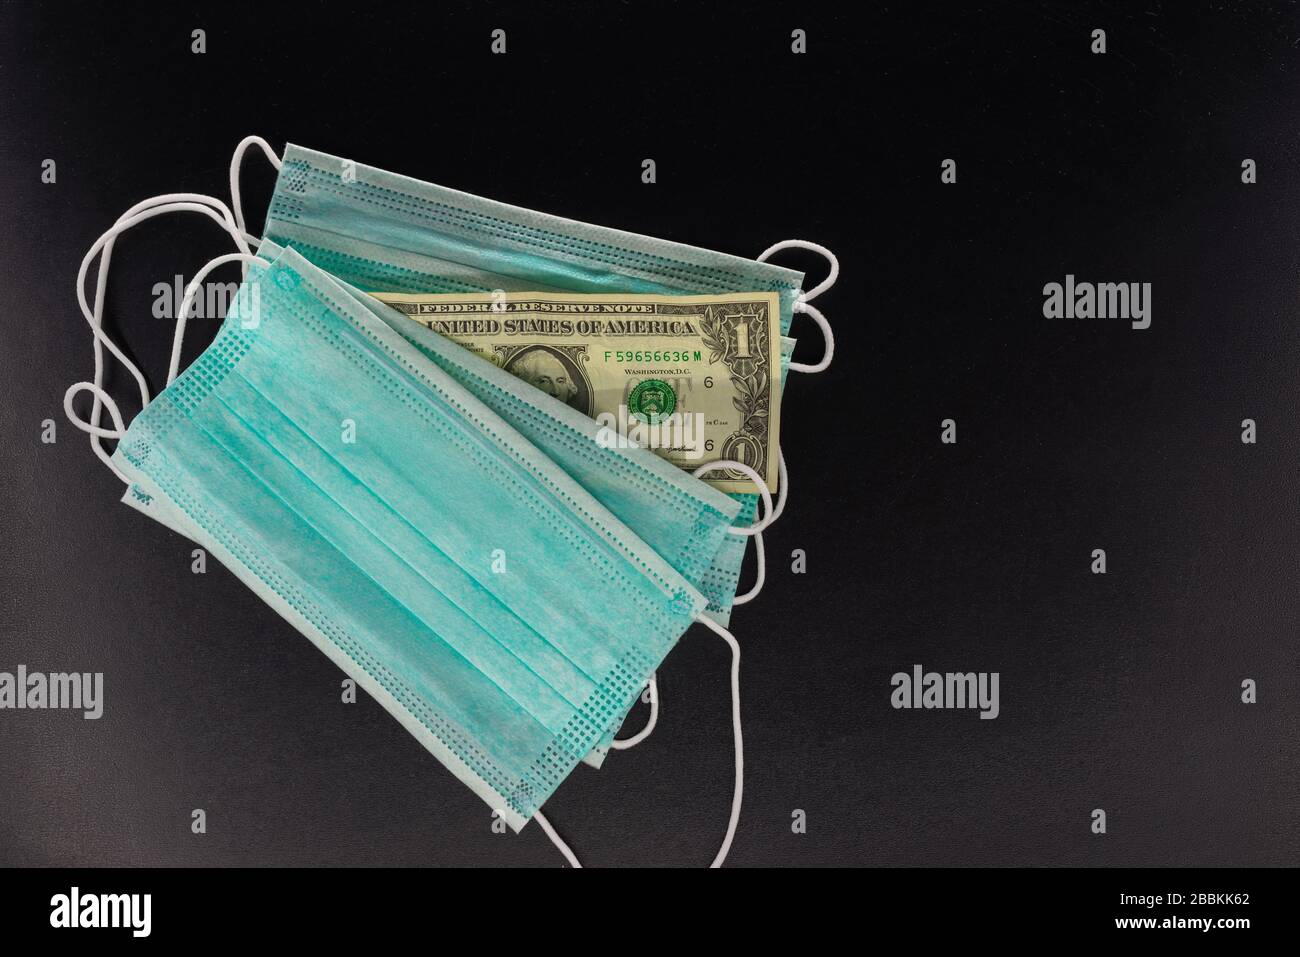 Gesichtsmasken und Banknoten von 1 Dollar auf schwarzem Hintergrund. Das Konzept des Mangels, der Spekulation und des Mangels an medizinischen Masken im Verkauf. Stockfoto